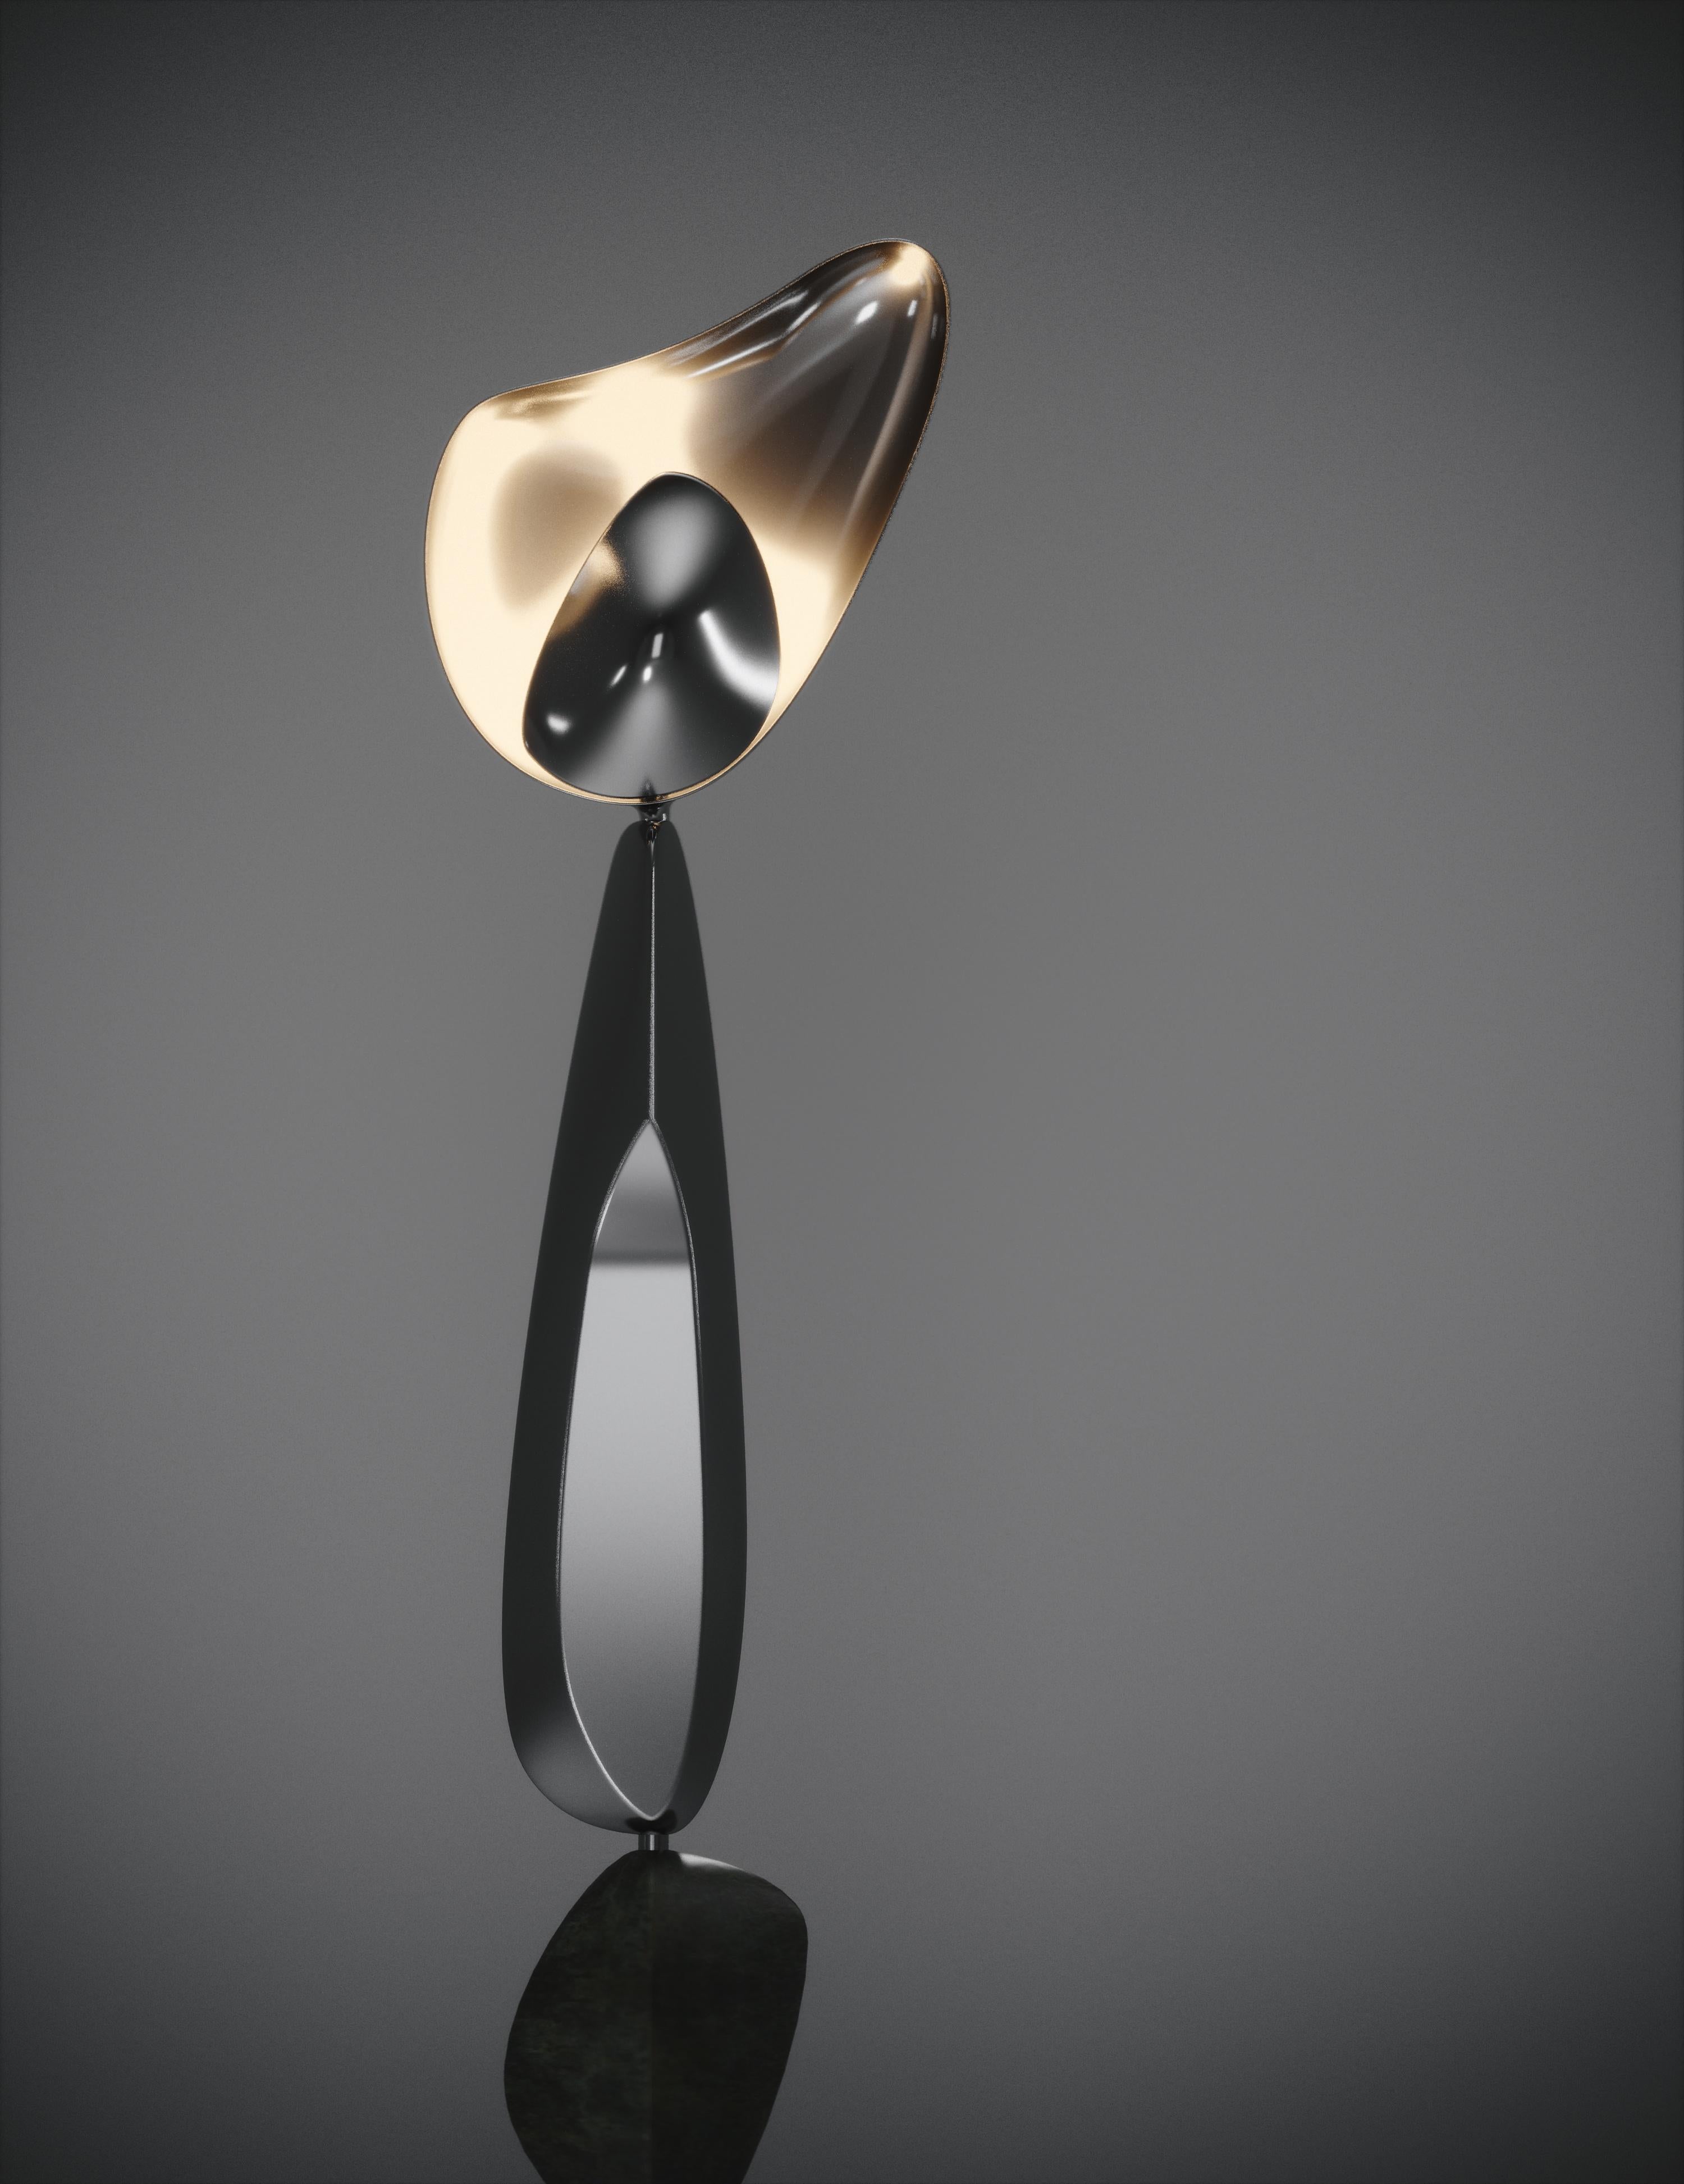 Le lampadaire Cosmo Moon de Feal Paris est une pièce fantaisiste et sculpturale, incrustée dans un acier inoxydable poli à finition chromée avec incrustation de parchemin ; créant une sensation vintage à la pièce. Les formes amorphes sont une